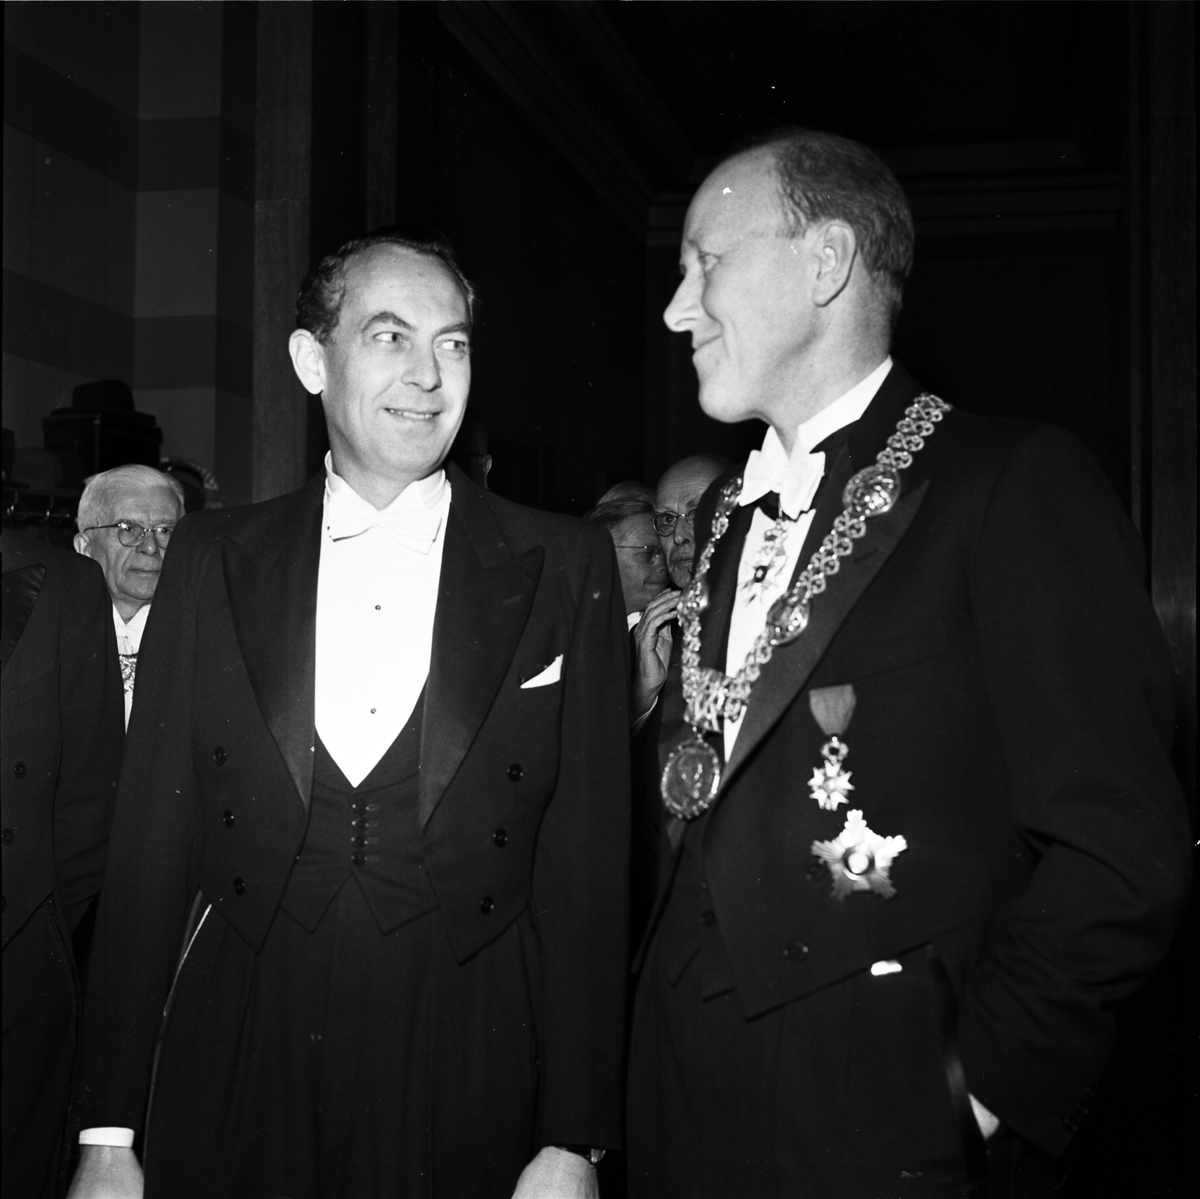 Rasbiologens nye chef Jan Arvid Böök tillsammans med Uppsala universitets rektor Torgny Segerstedt i Universitetsaulan, Uppsala 1957. I bakgrunden professor Nils von Hofsten